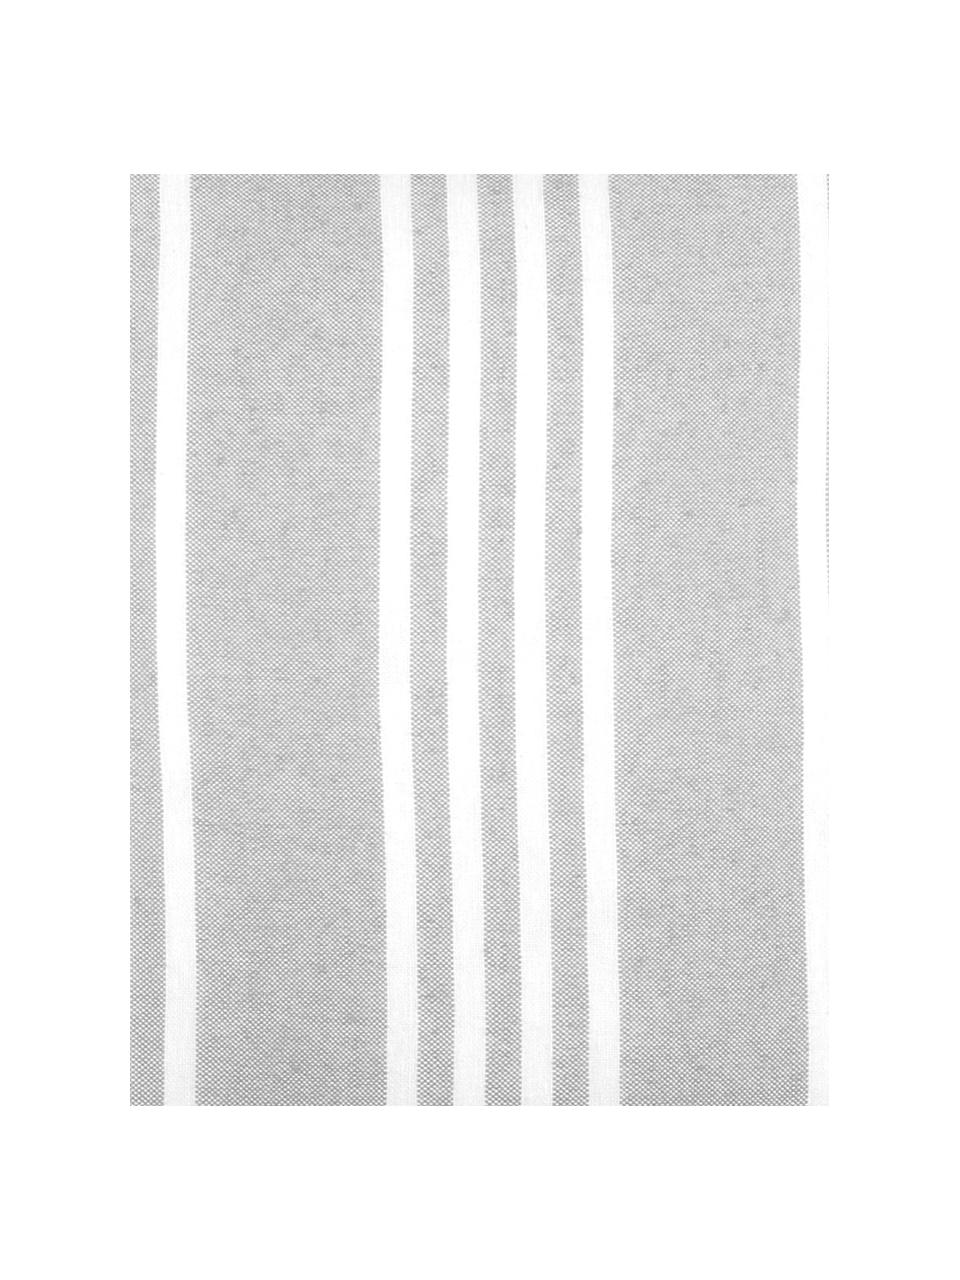 Gestreiftes Kissen Mandelieu in Grau, mit Inlett, Baumwollgemisch, Hellgrau, Weiß, 50 x 50 cm